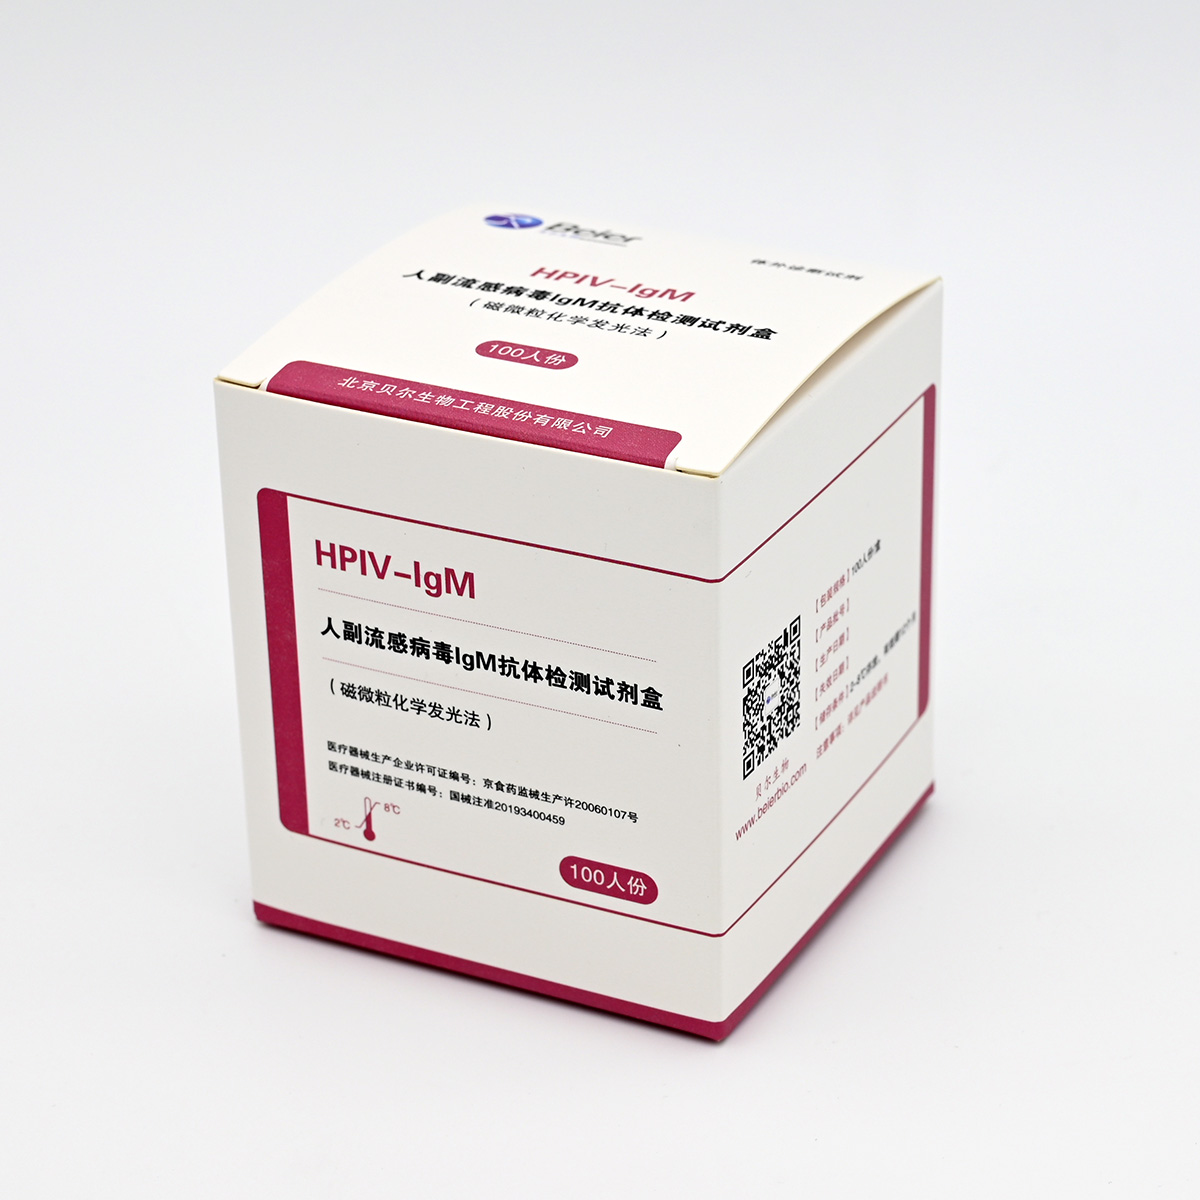 【贝尔】人副流感病毒IgM抗体检测试剂盒(磁微粒化学发光法)